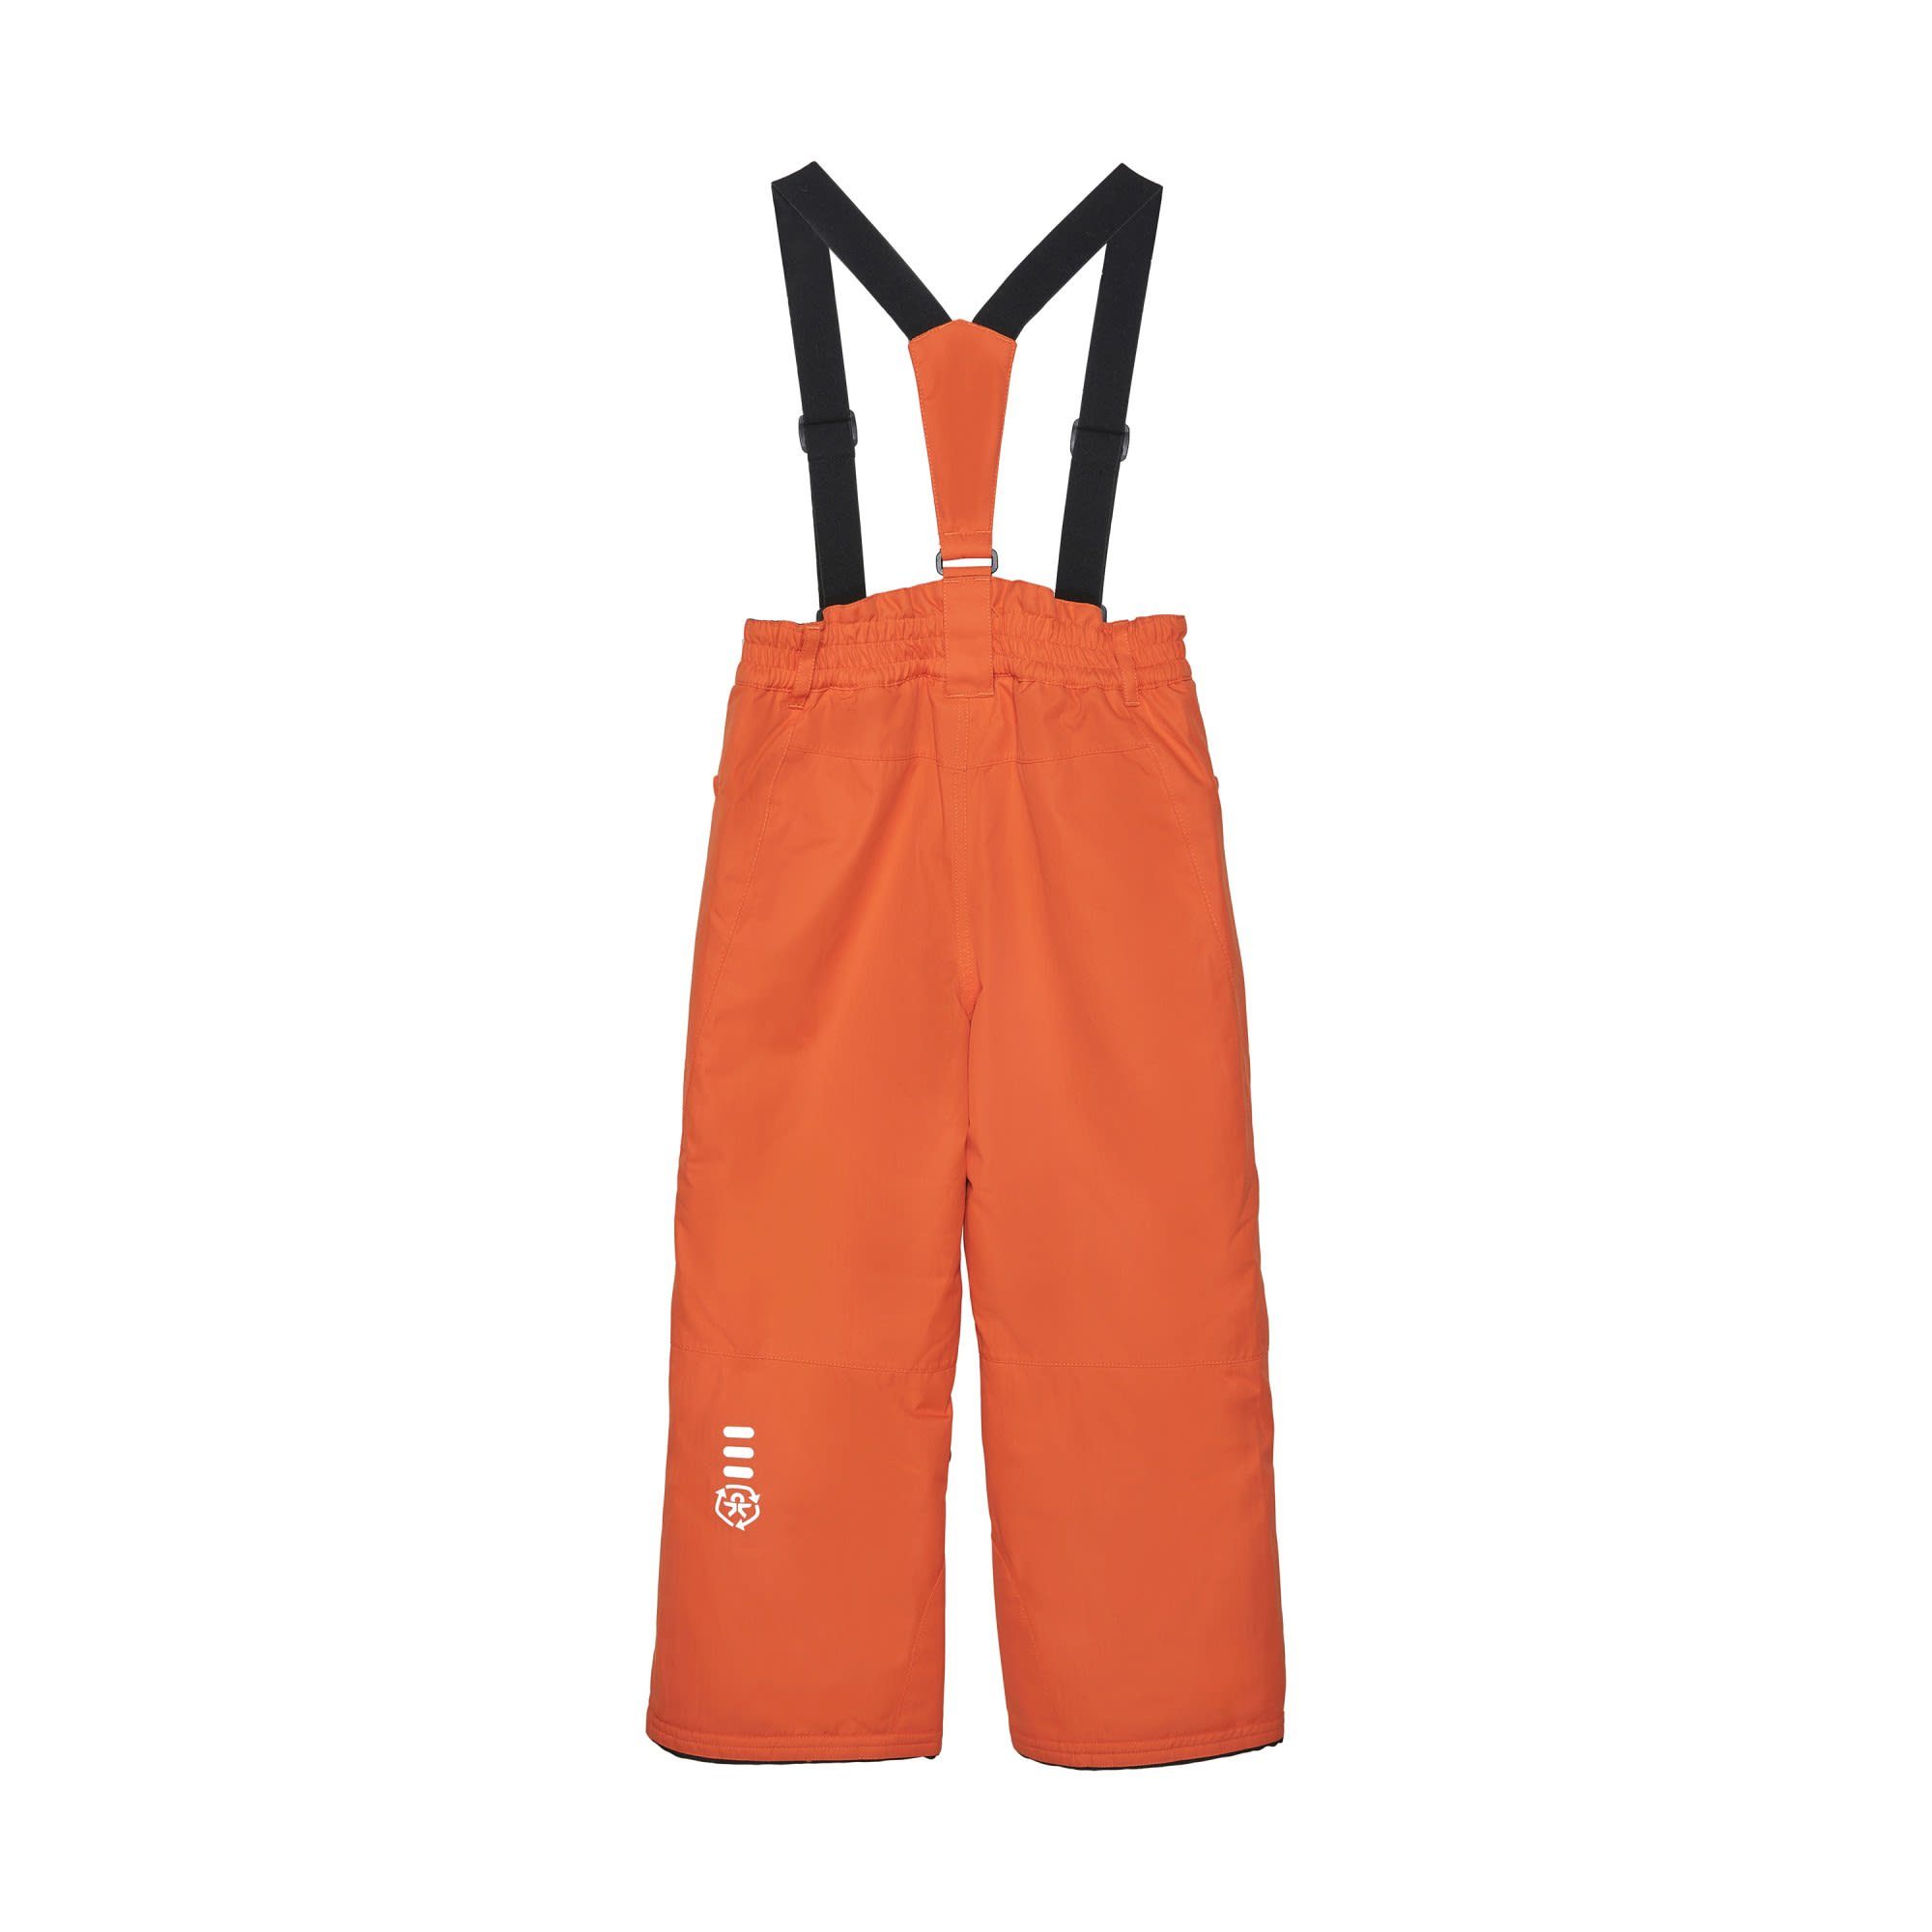 Shorts Ski COLOR With & Pants Kinder Hose Color 5 KIDS Kids Kids orange Pockets